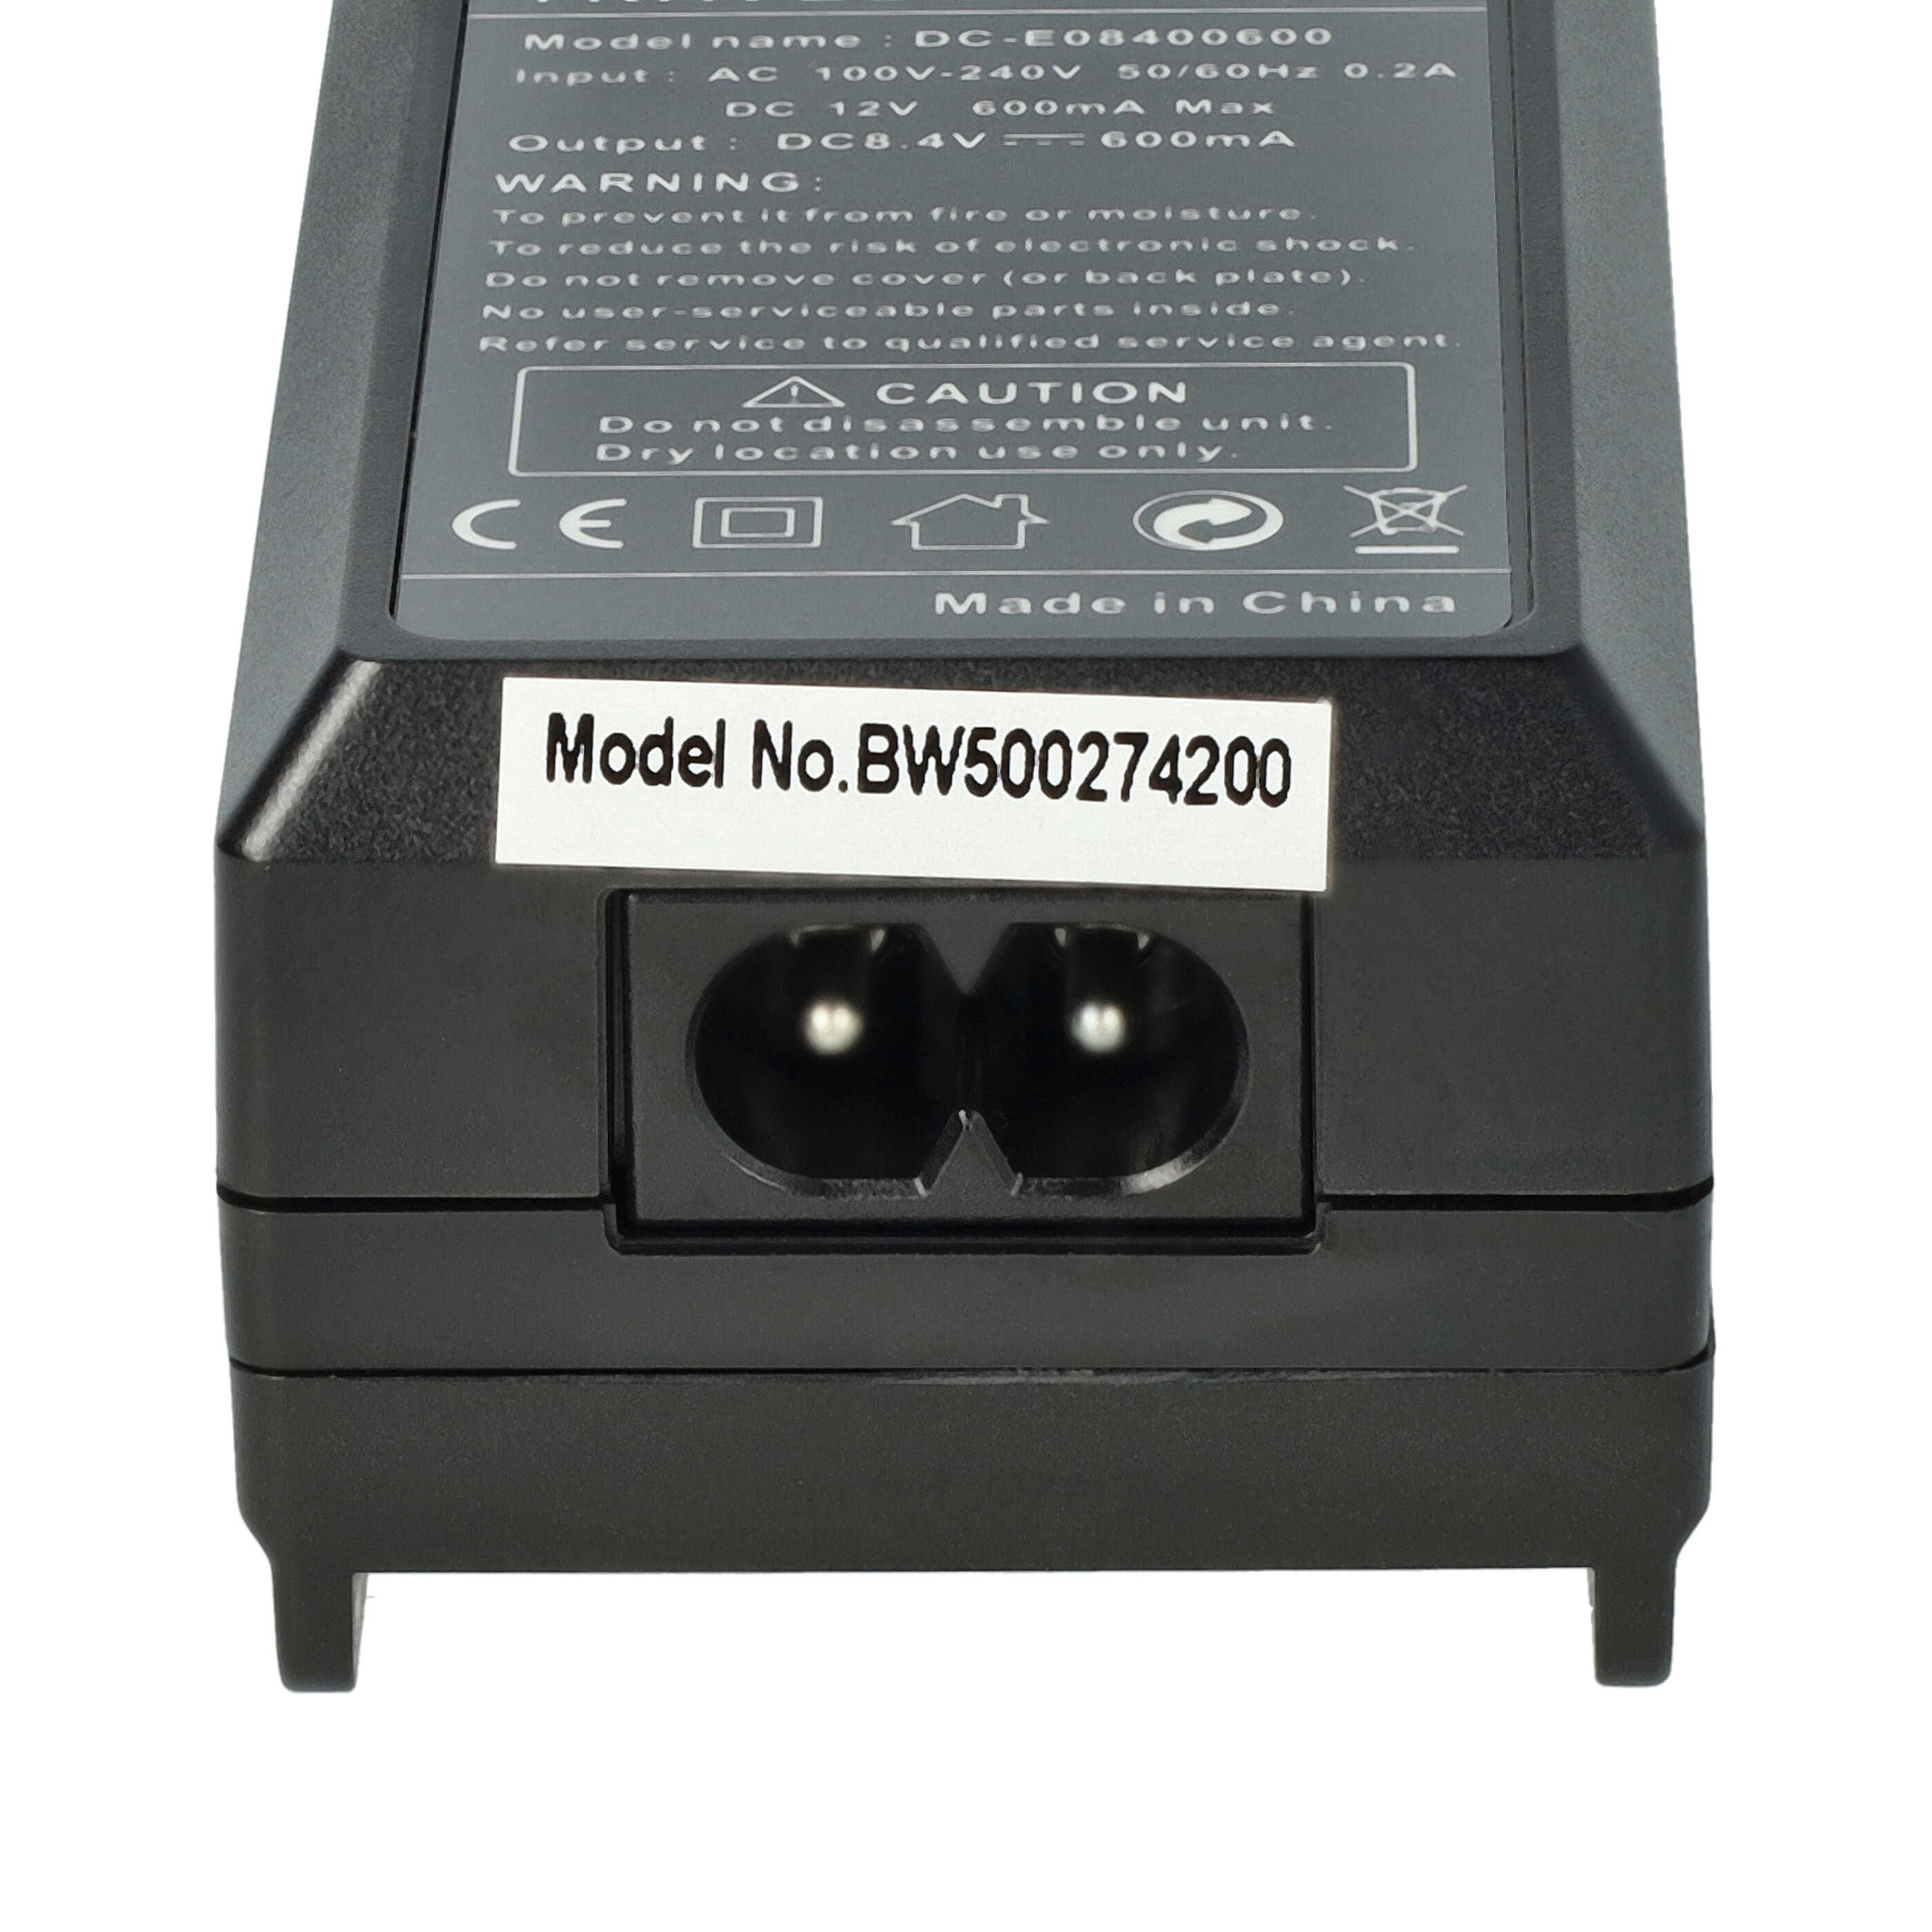 Akku Ladegerät als Ersatz für Olympus BCM-1 passend für Olympus BLM-5 Kamera u.a. - 0,6 A, 8,4 V